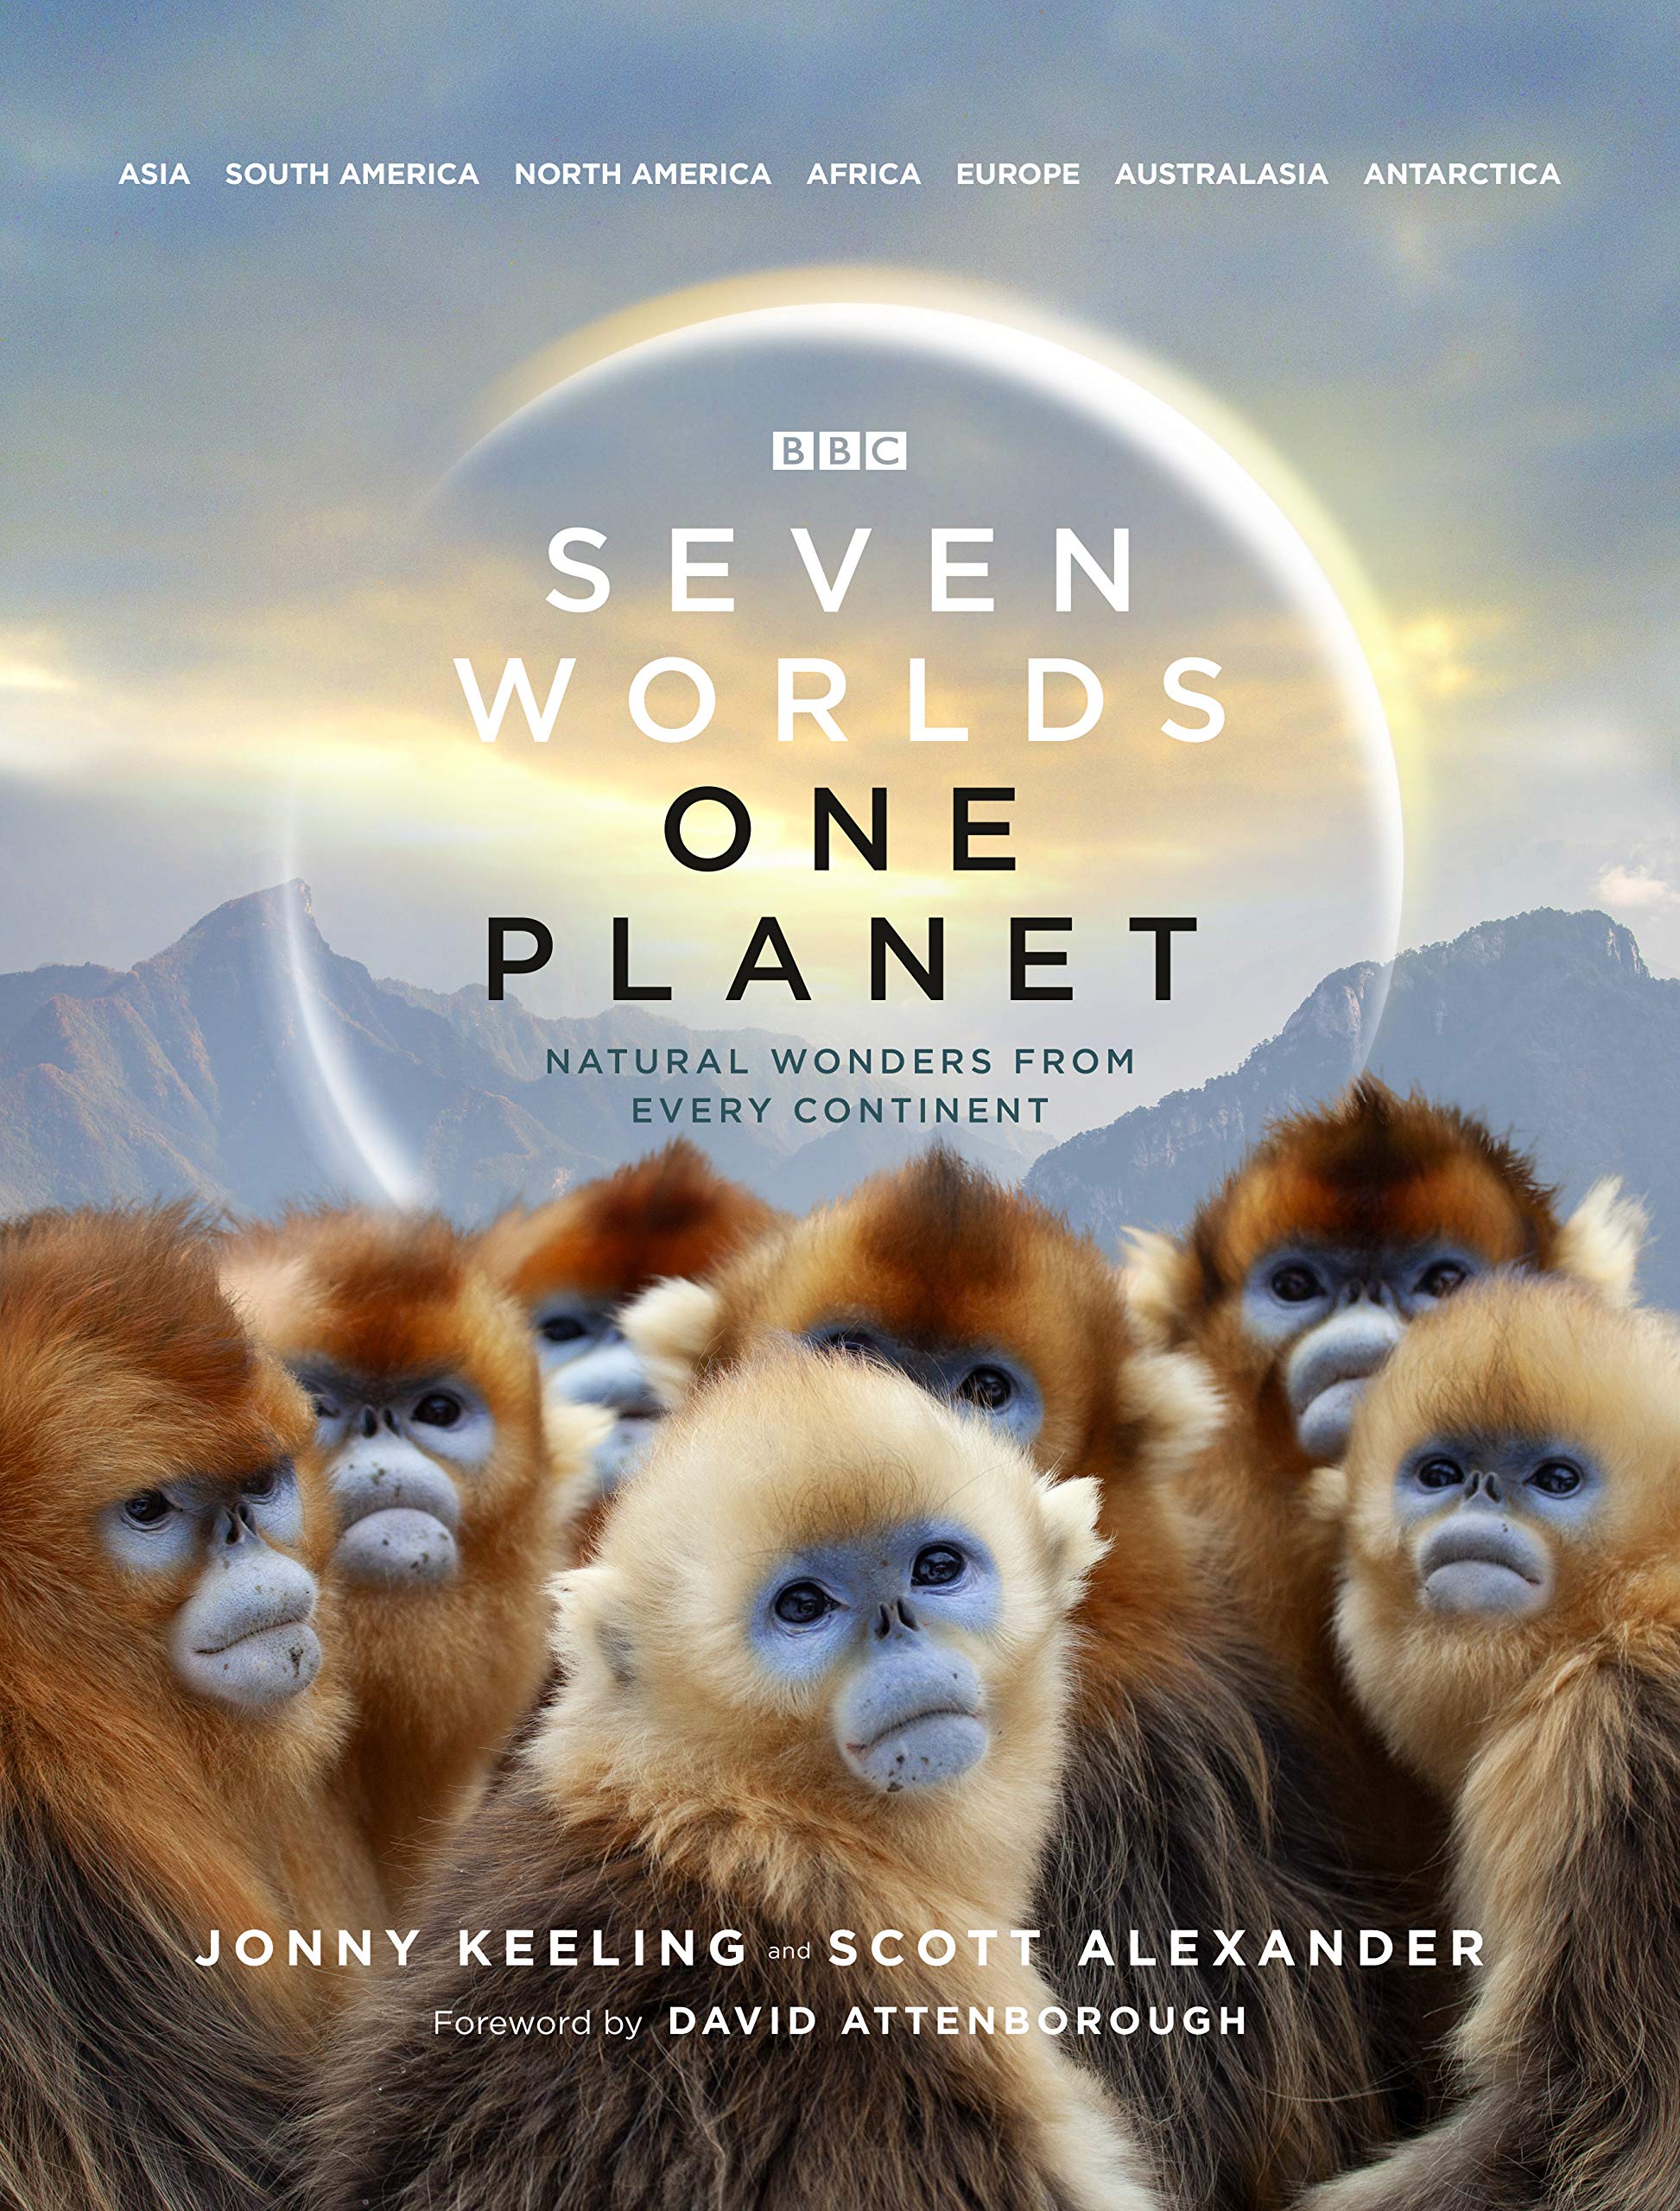 Mua Seven Worlds One Planet (Hardcover) trên Amazon Anh chính hãng